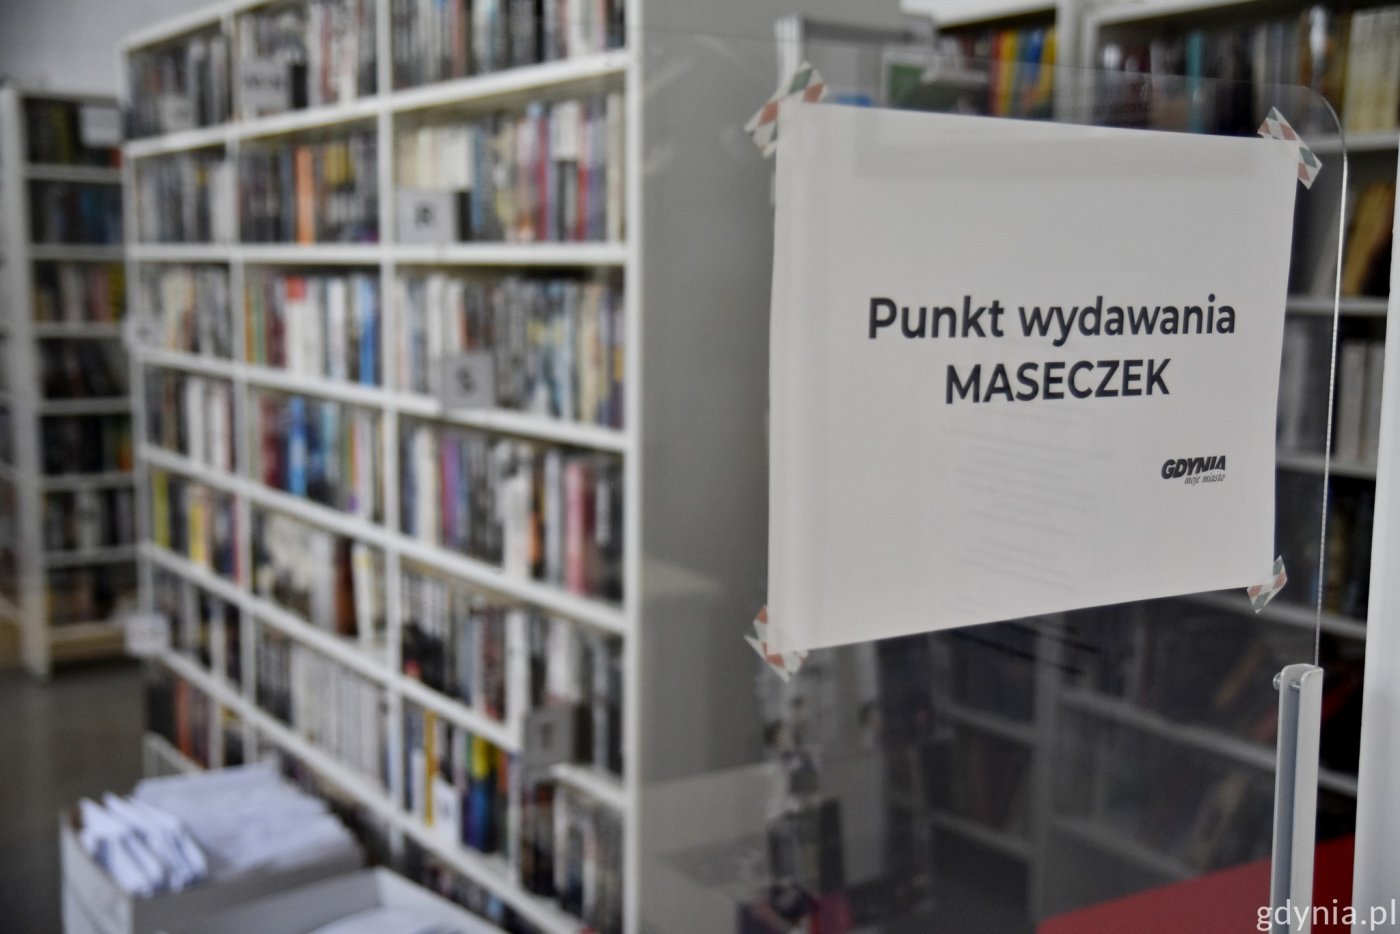 Maseczki w bibliotekach dostępne do wyczerpania zapasów // fot. Paweł Kukla